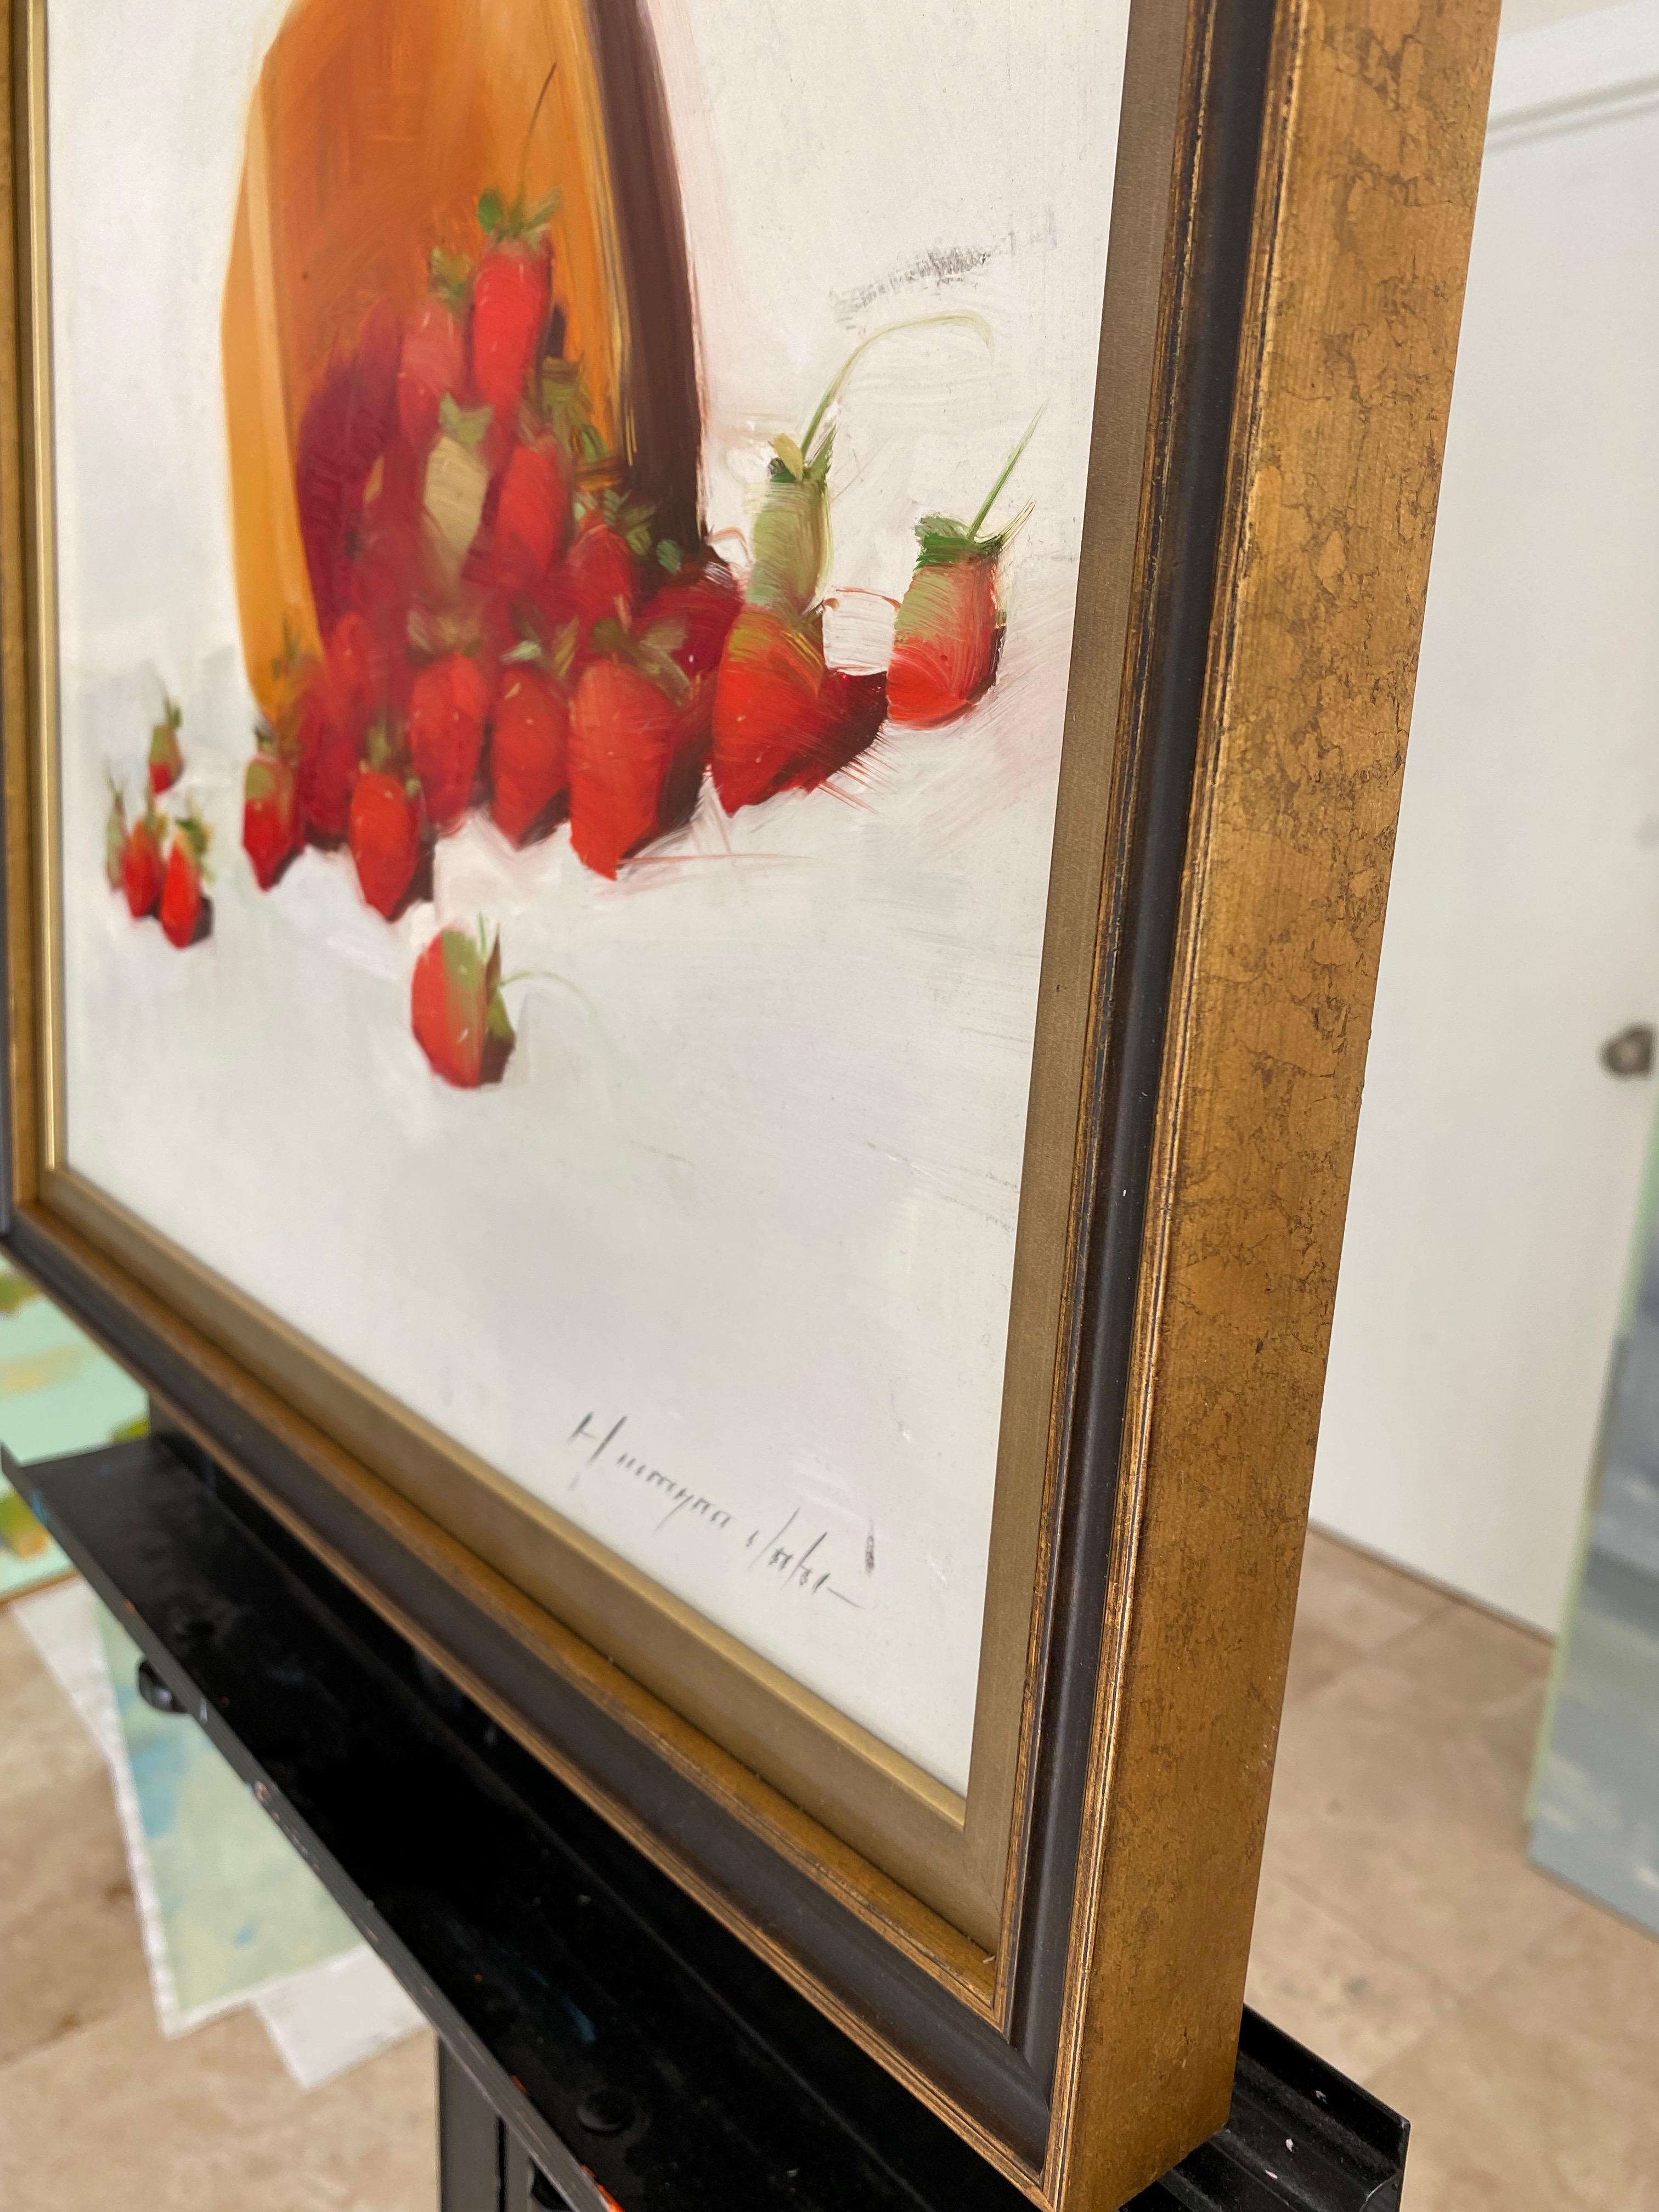 Künstler: Vahe Yeremyan 
Werk: Original Ölgemälde, Handgemachtes Kunstwerk, Unikat 
Medium: Öl auf Platte, 
Jahr: 2022
Stil: Impressionismus, 
Thema: Erdbeeren,
Größe: 16,5